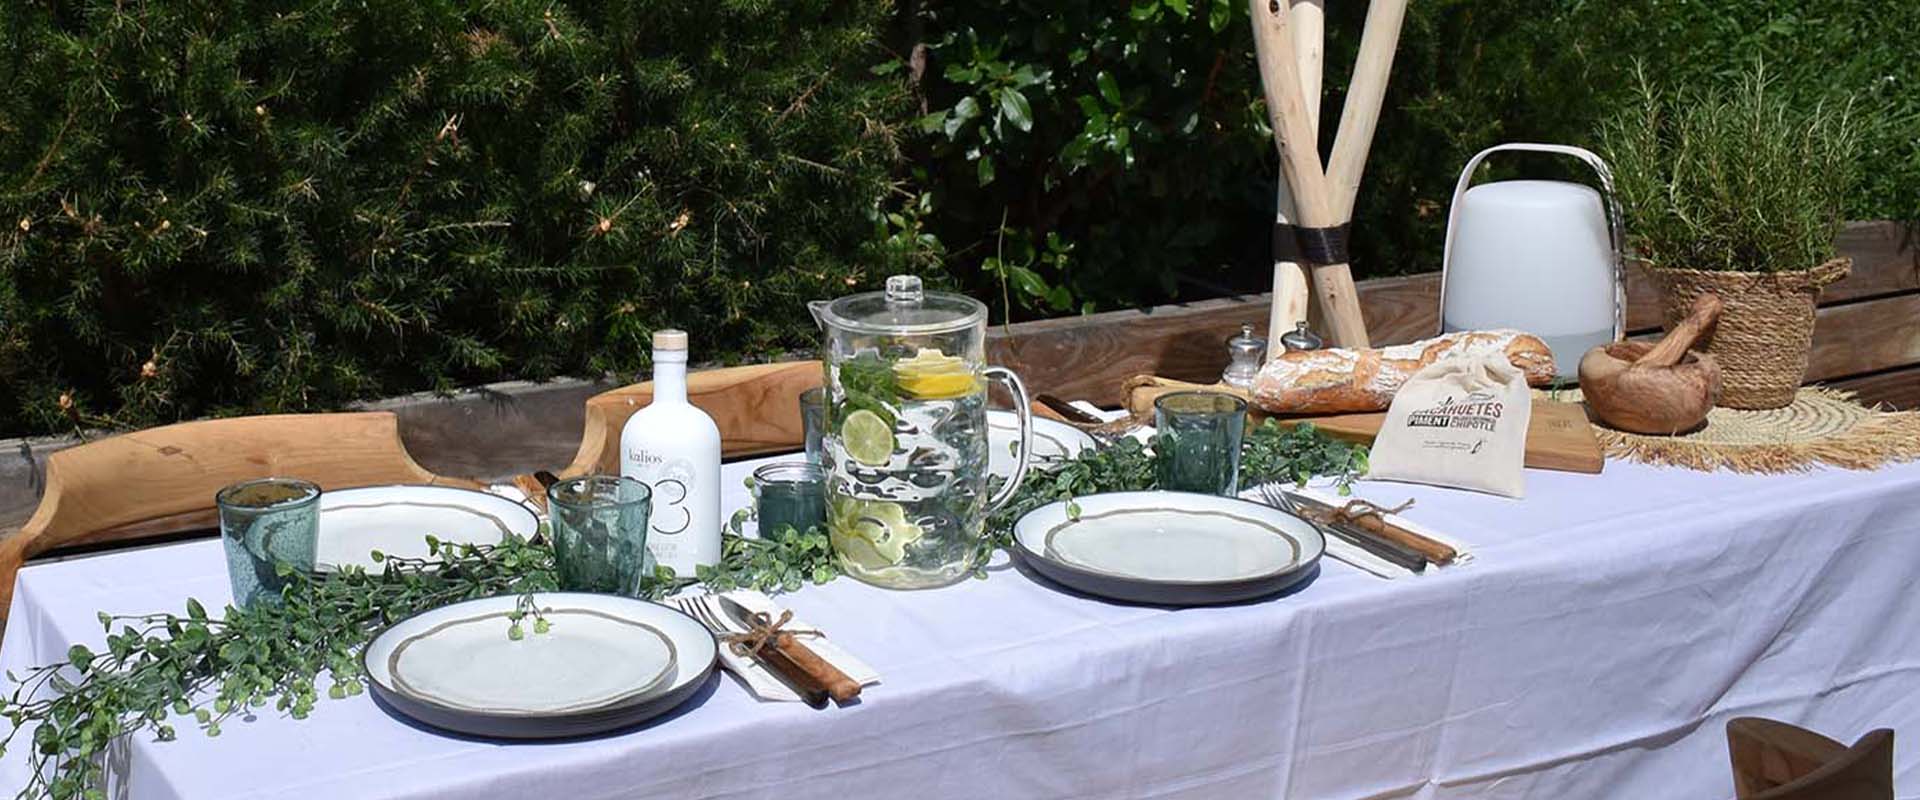 Nos Essentiels Pour Une Table Estivale Qui A Du Style Blog Barbecue And Co 